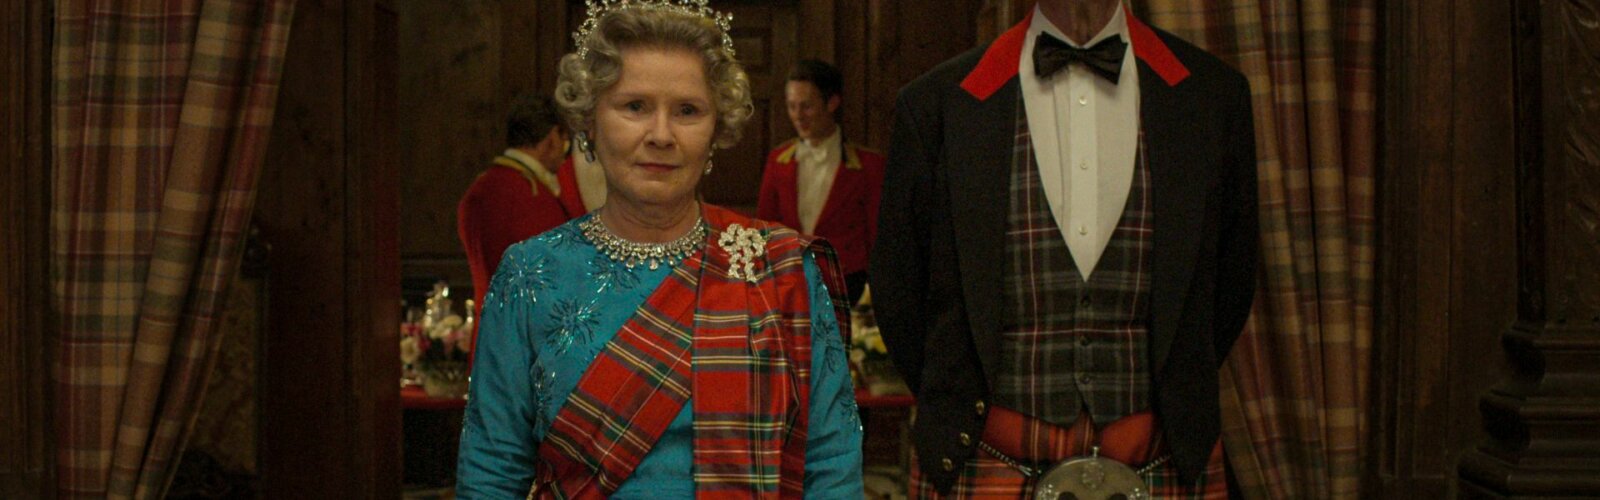 Jonathan Pryce als Prinz Phillip und Imelda Staunton als Queen Elizabeth II in The Crown Staffel 5.